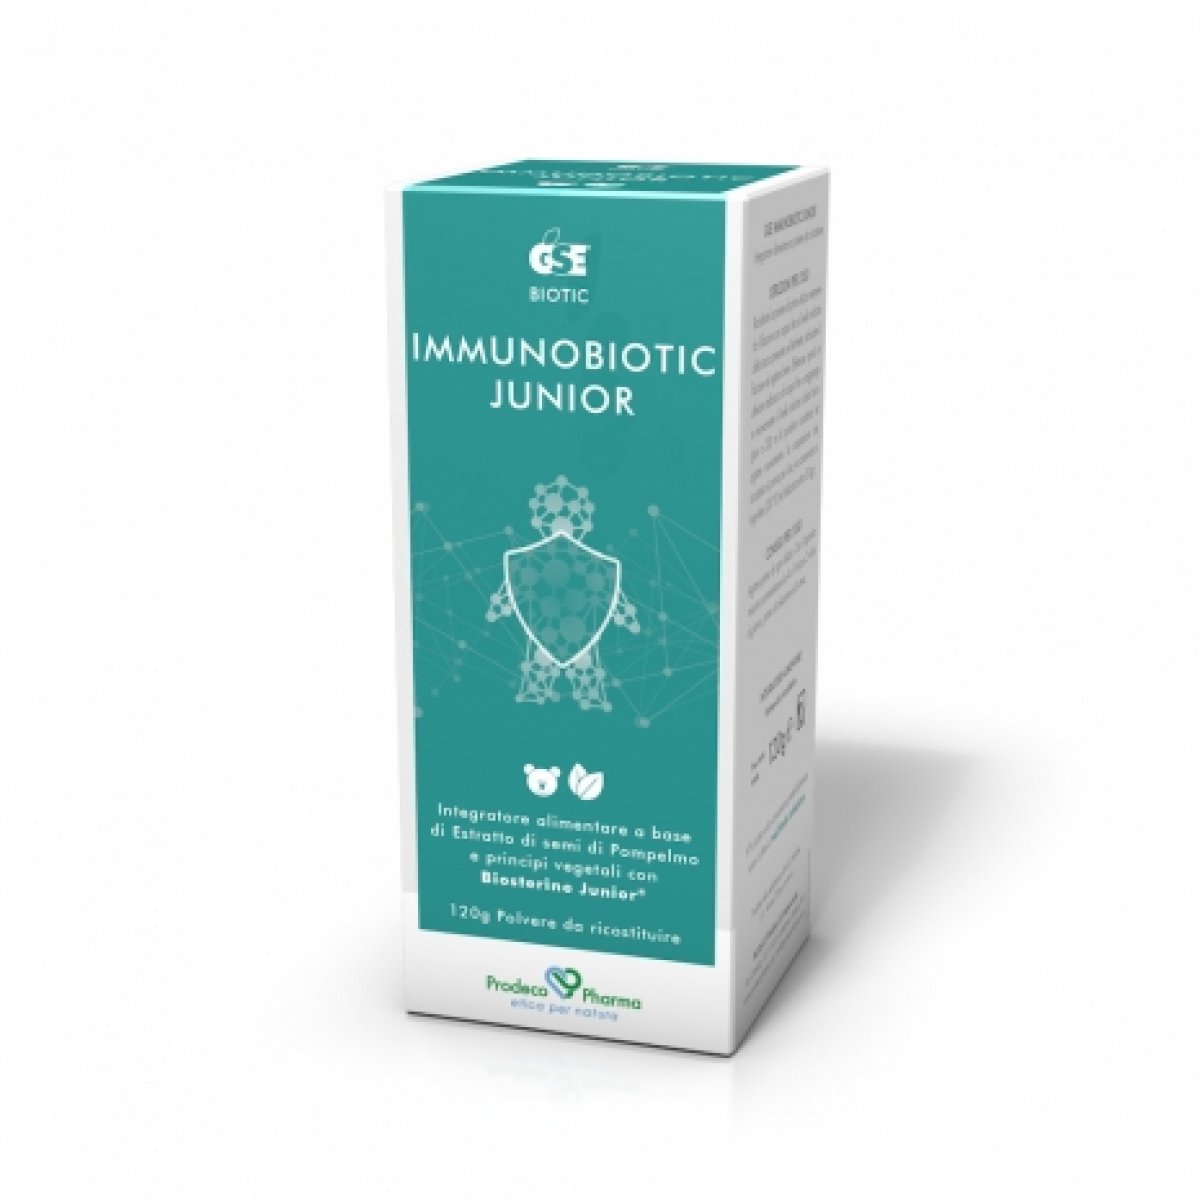 GSE   Immunobiotic Junior - Prodeco Pharma Integratore a base di estratto di semi di pompelmo, Biosterine®, Uncaria e Ananas utile per aumentare le difese immunitarie. Flacone da 120 g